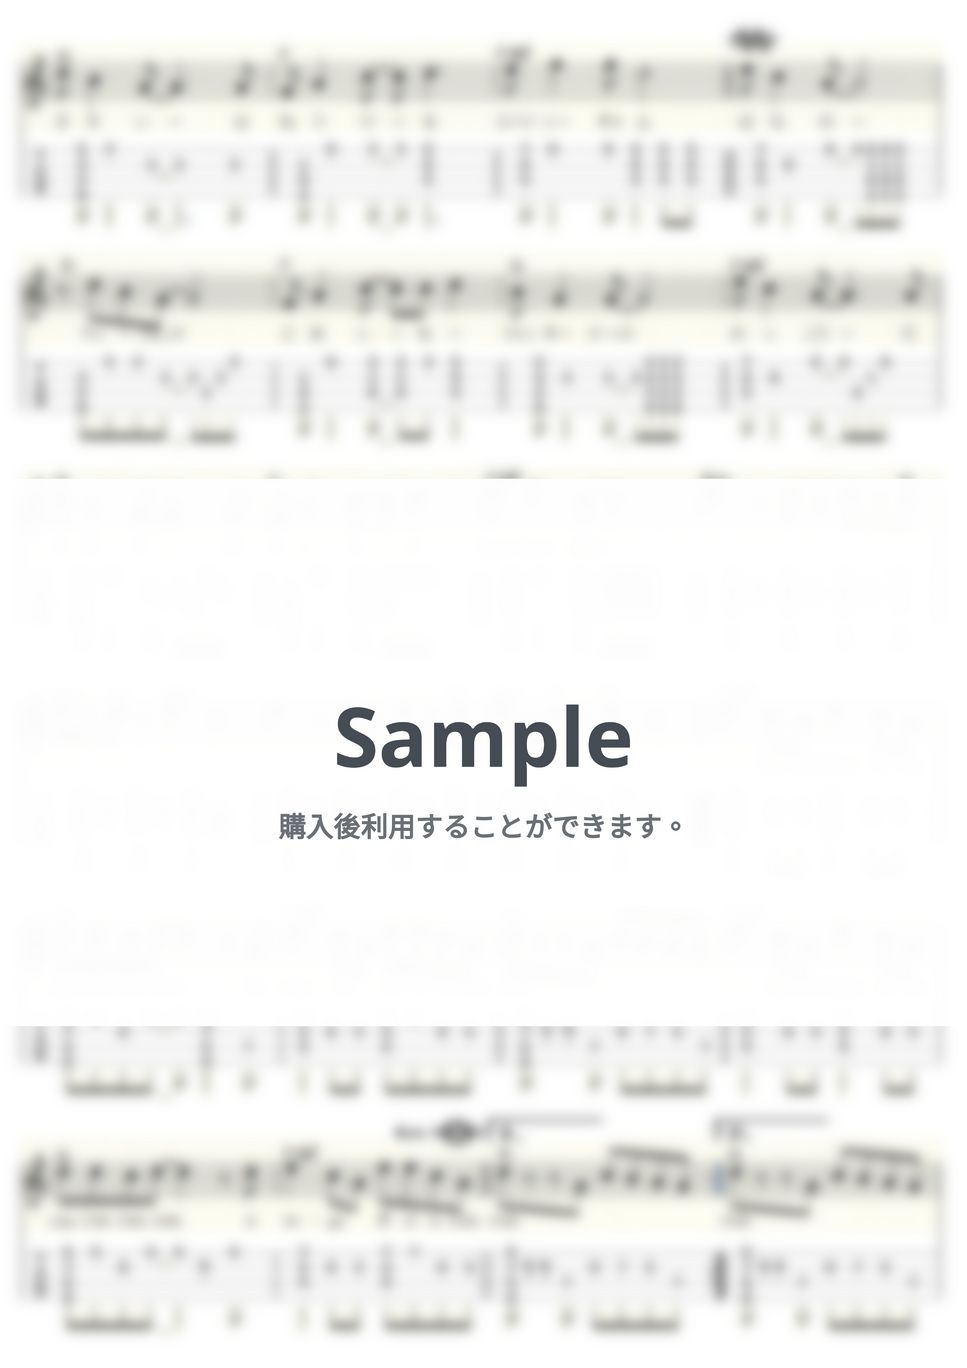 石井明美 - CHA-CHA-CHA (ｳｸﾚﾚｿﾛ/High-G・Low-G/中級) by ukulelepapa